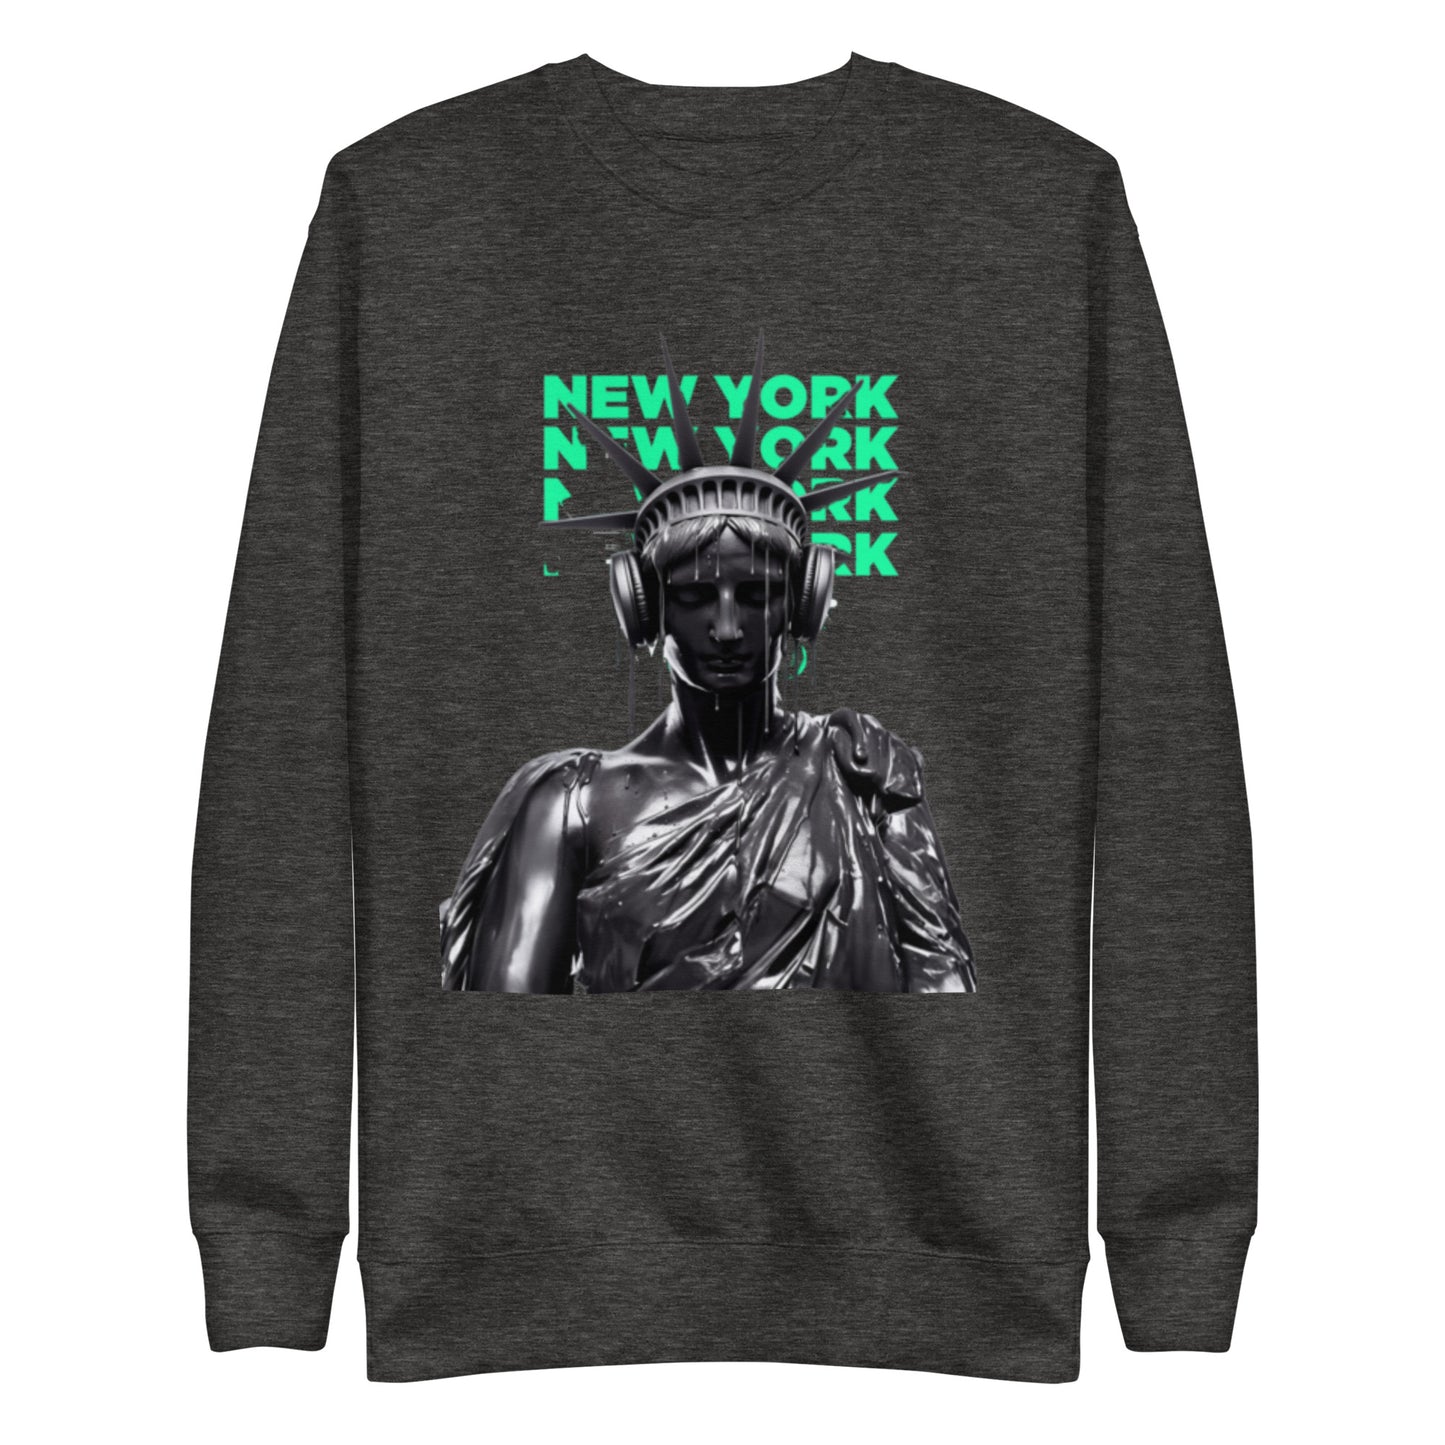 New York (ez1style) Unisex Premium Sweatshirt